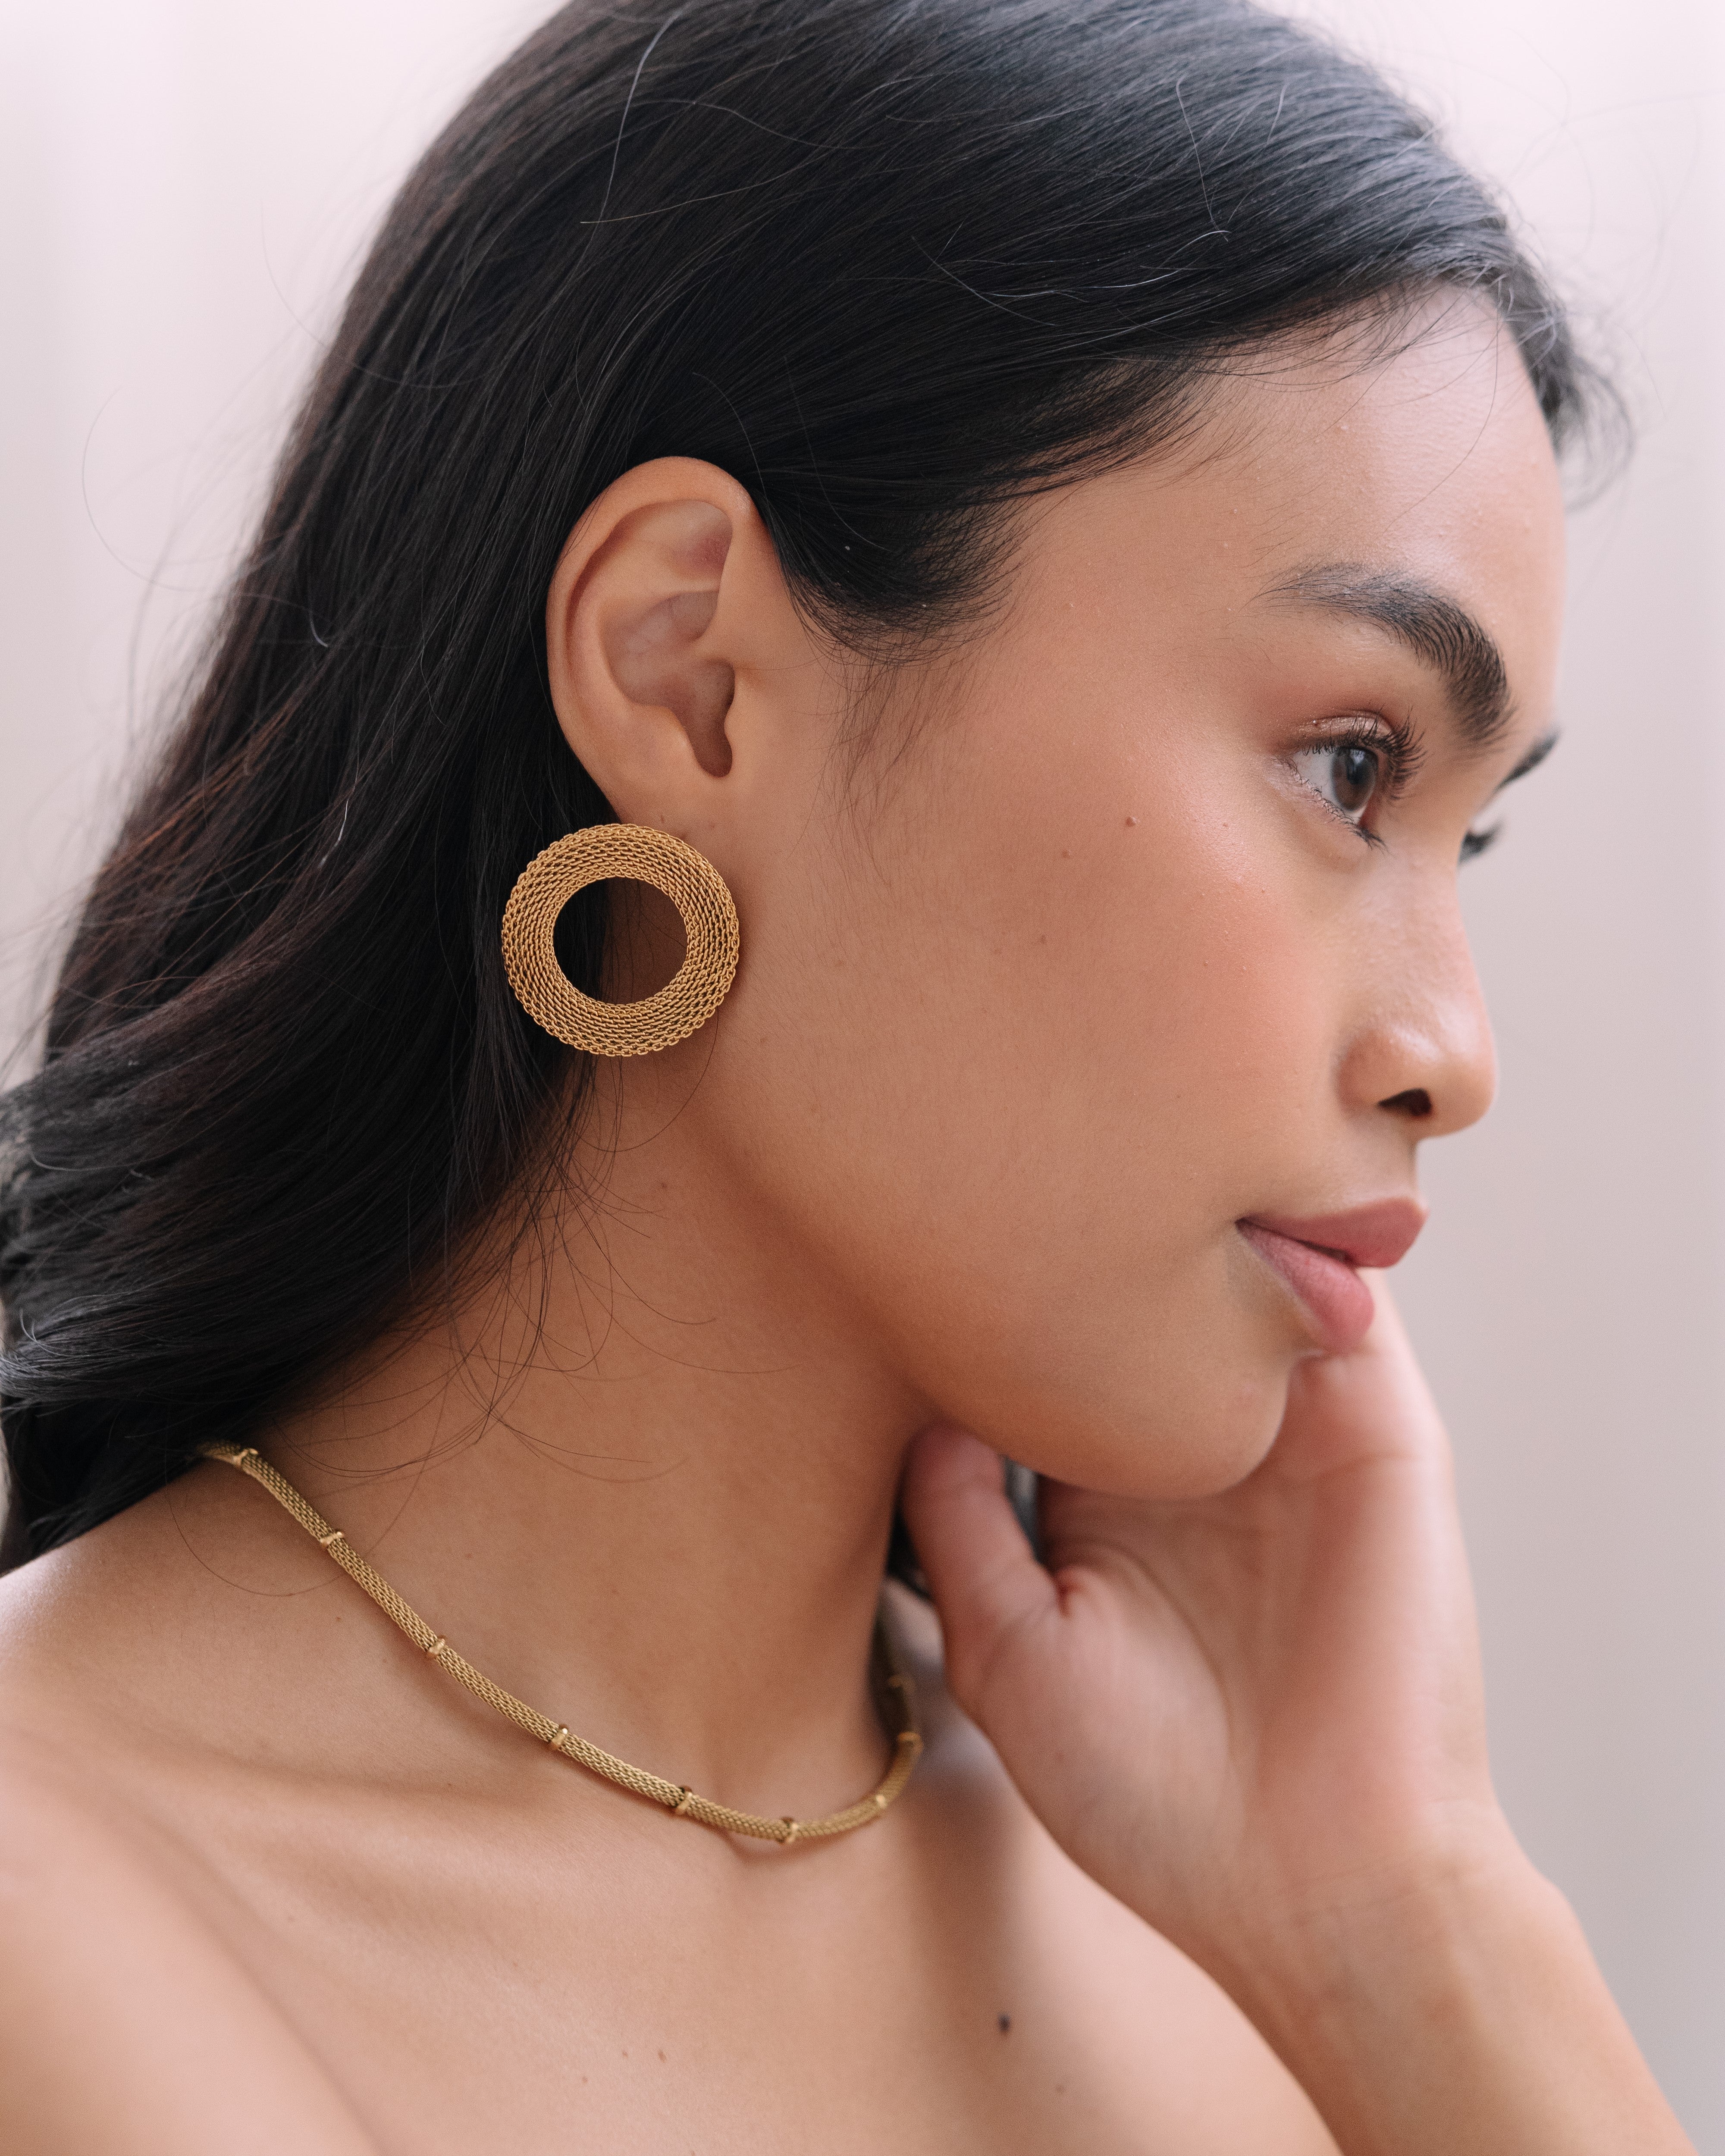 Classy mesh earrings